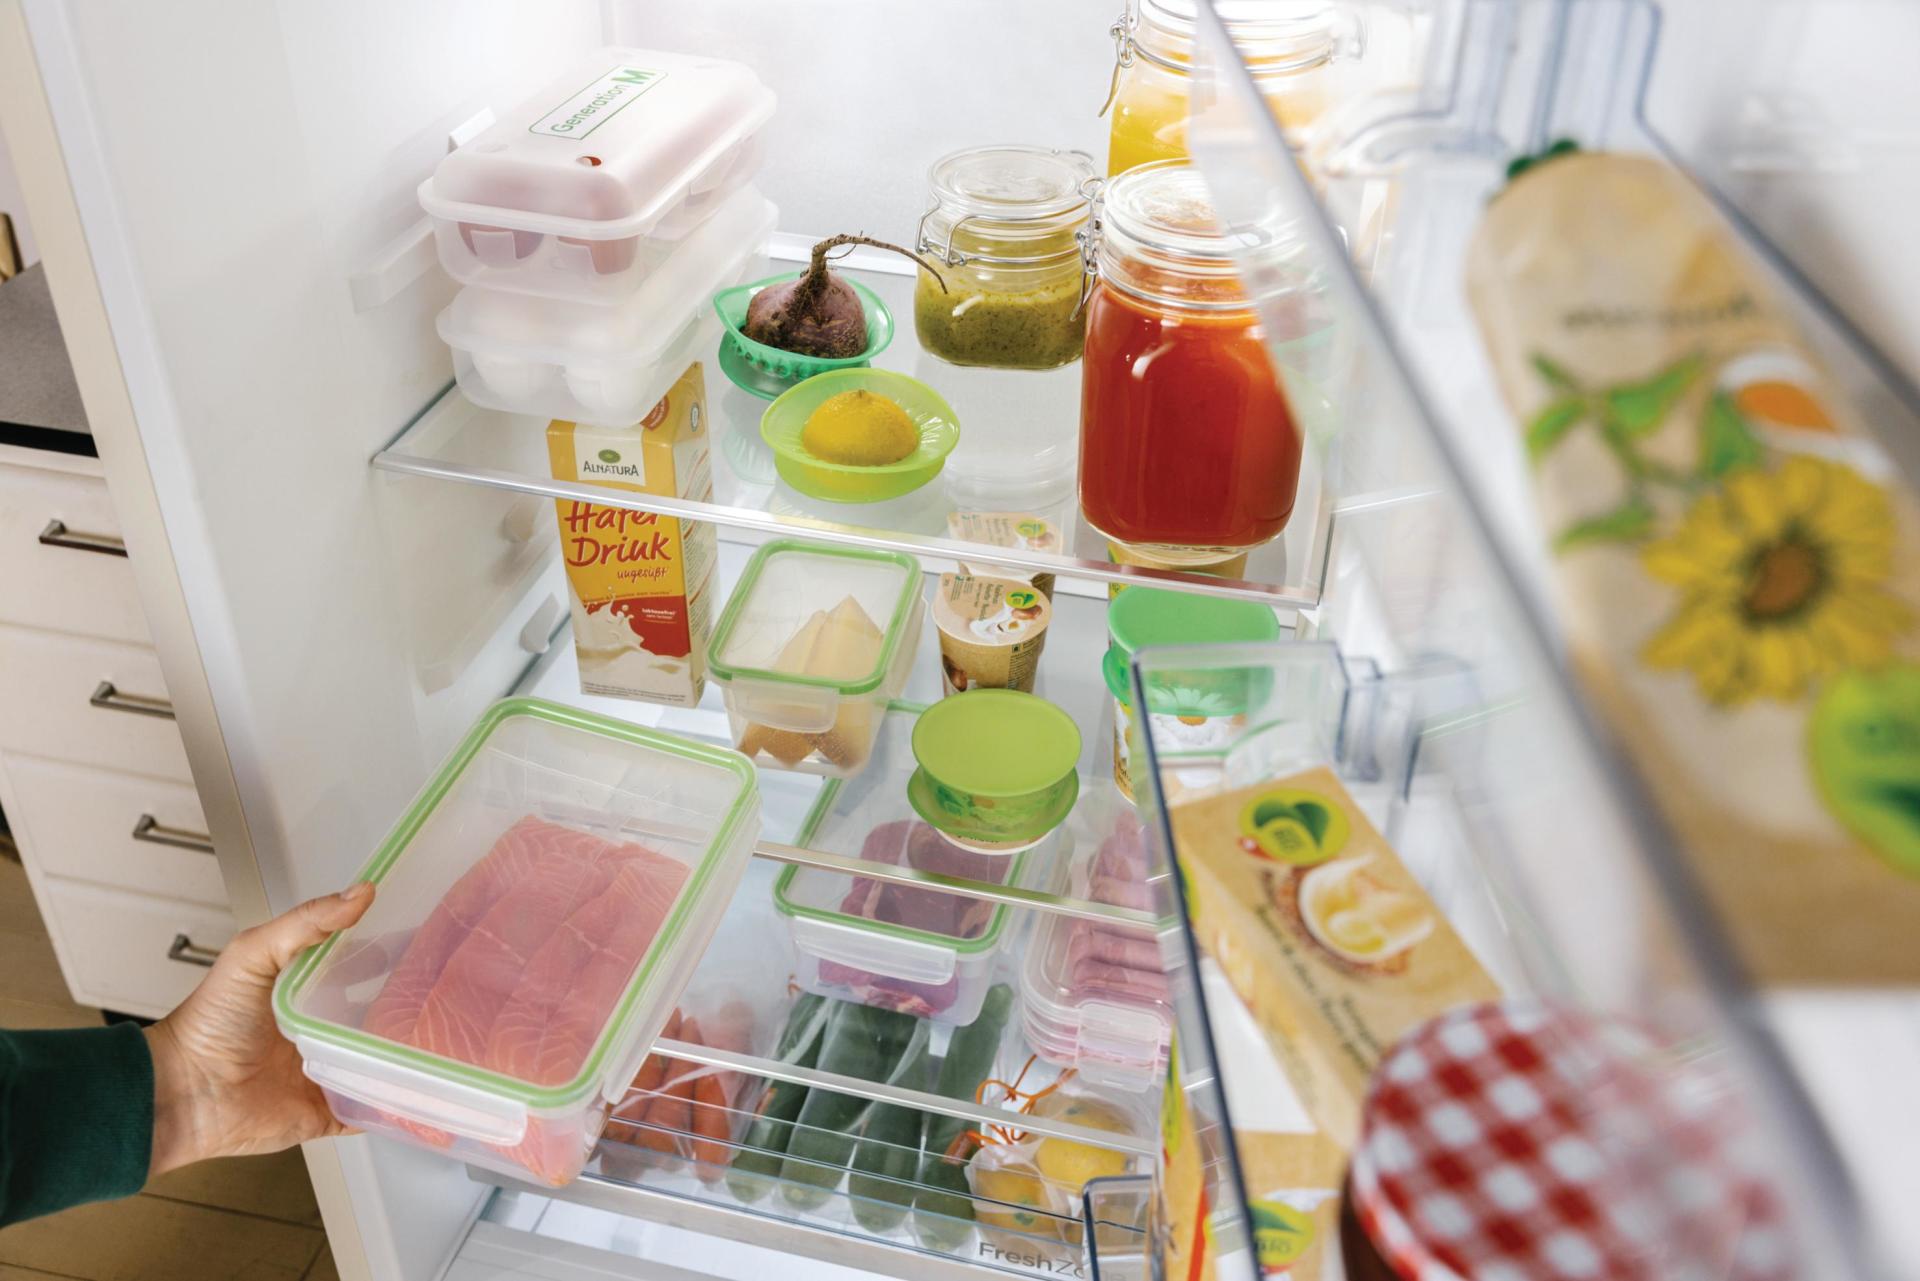 Eine offene Kühlschranktür gibt den Blick frei auf ordentlich eingefüllte Lebensmittel